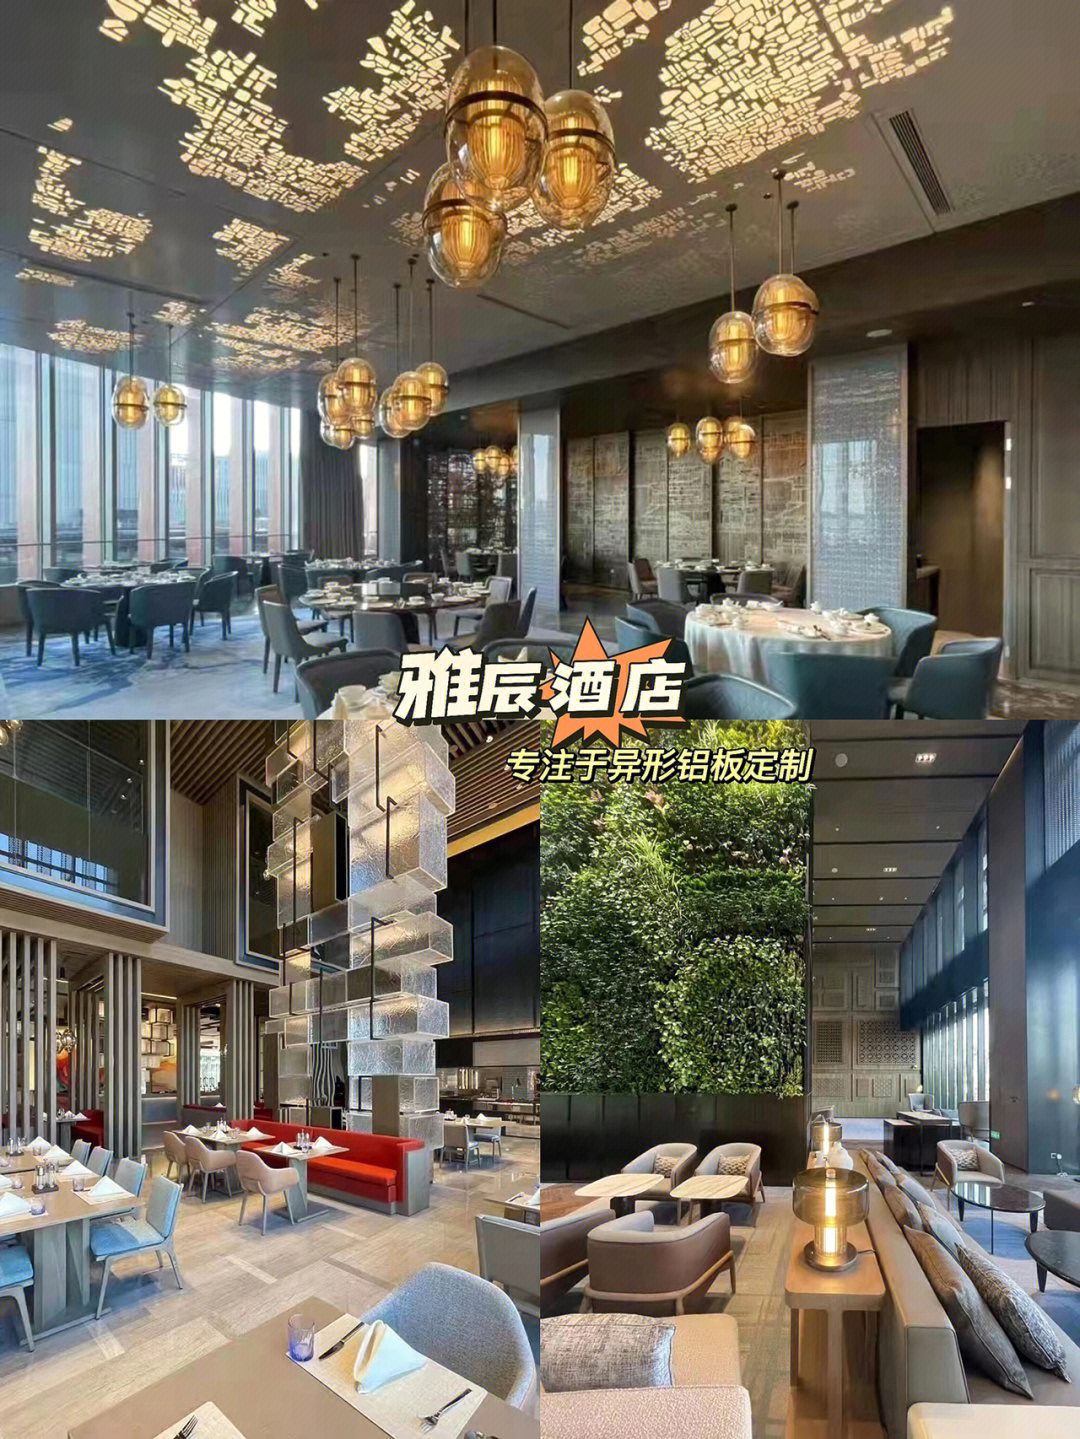 上海雅辰酒店高端酒店装修